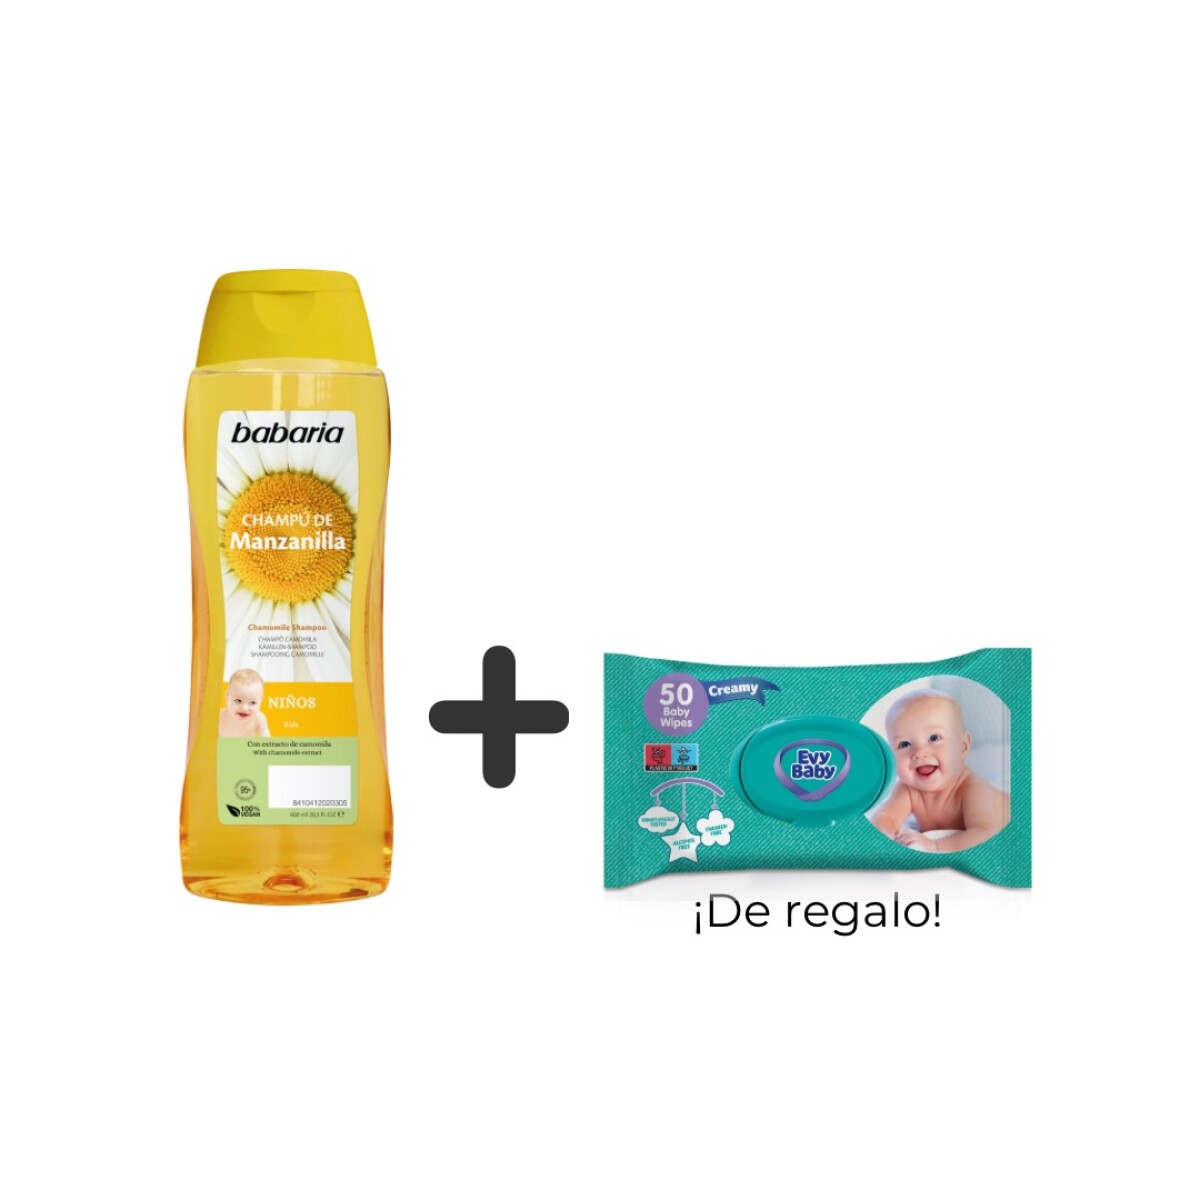 Shampoo de manzanilla para bebé + toallitas húmedas x 50 unidades ¡DE REGALO! 